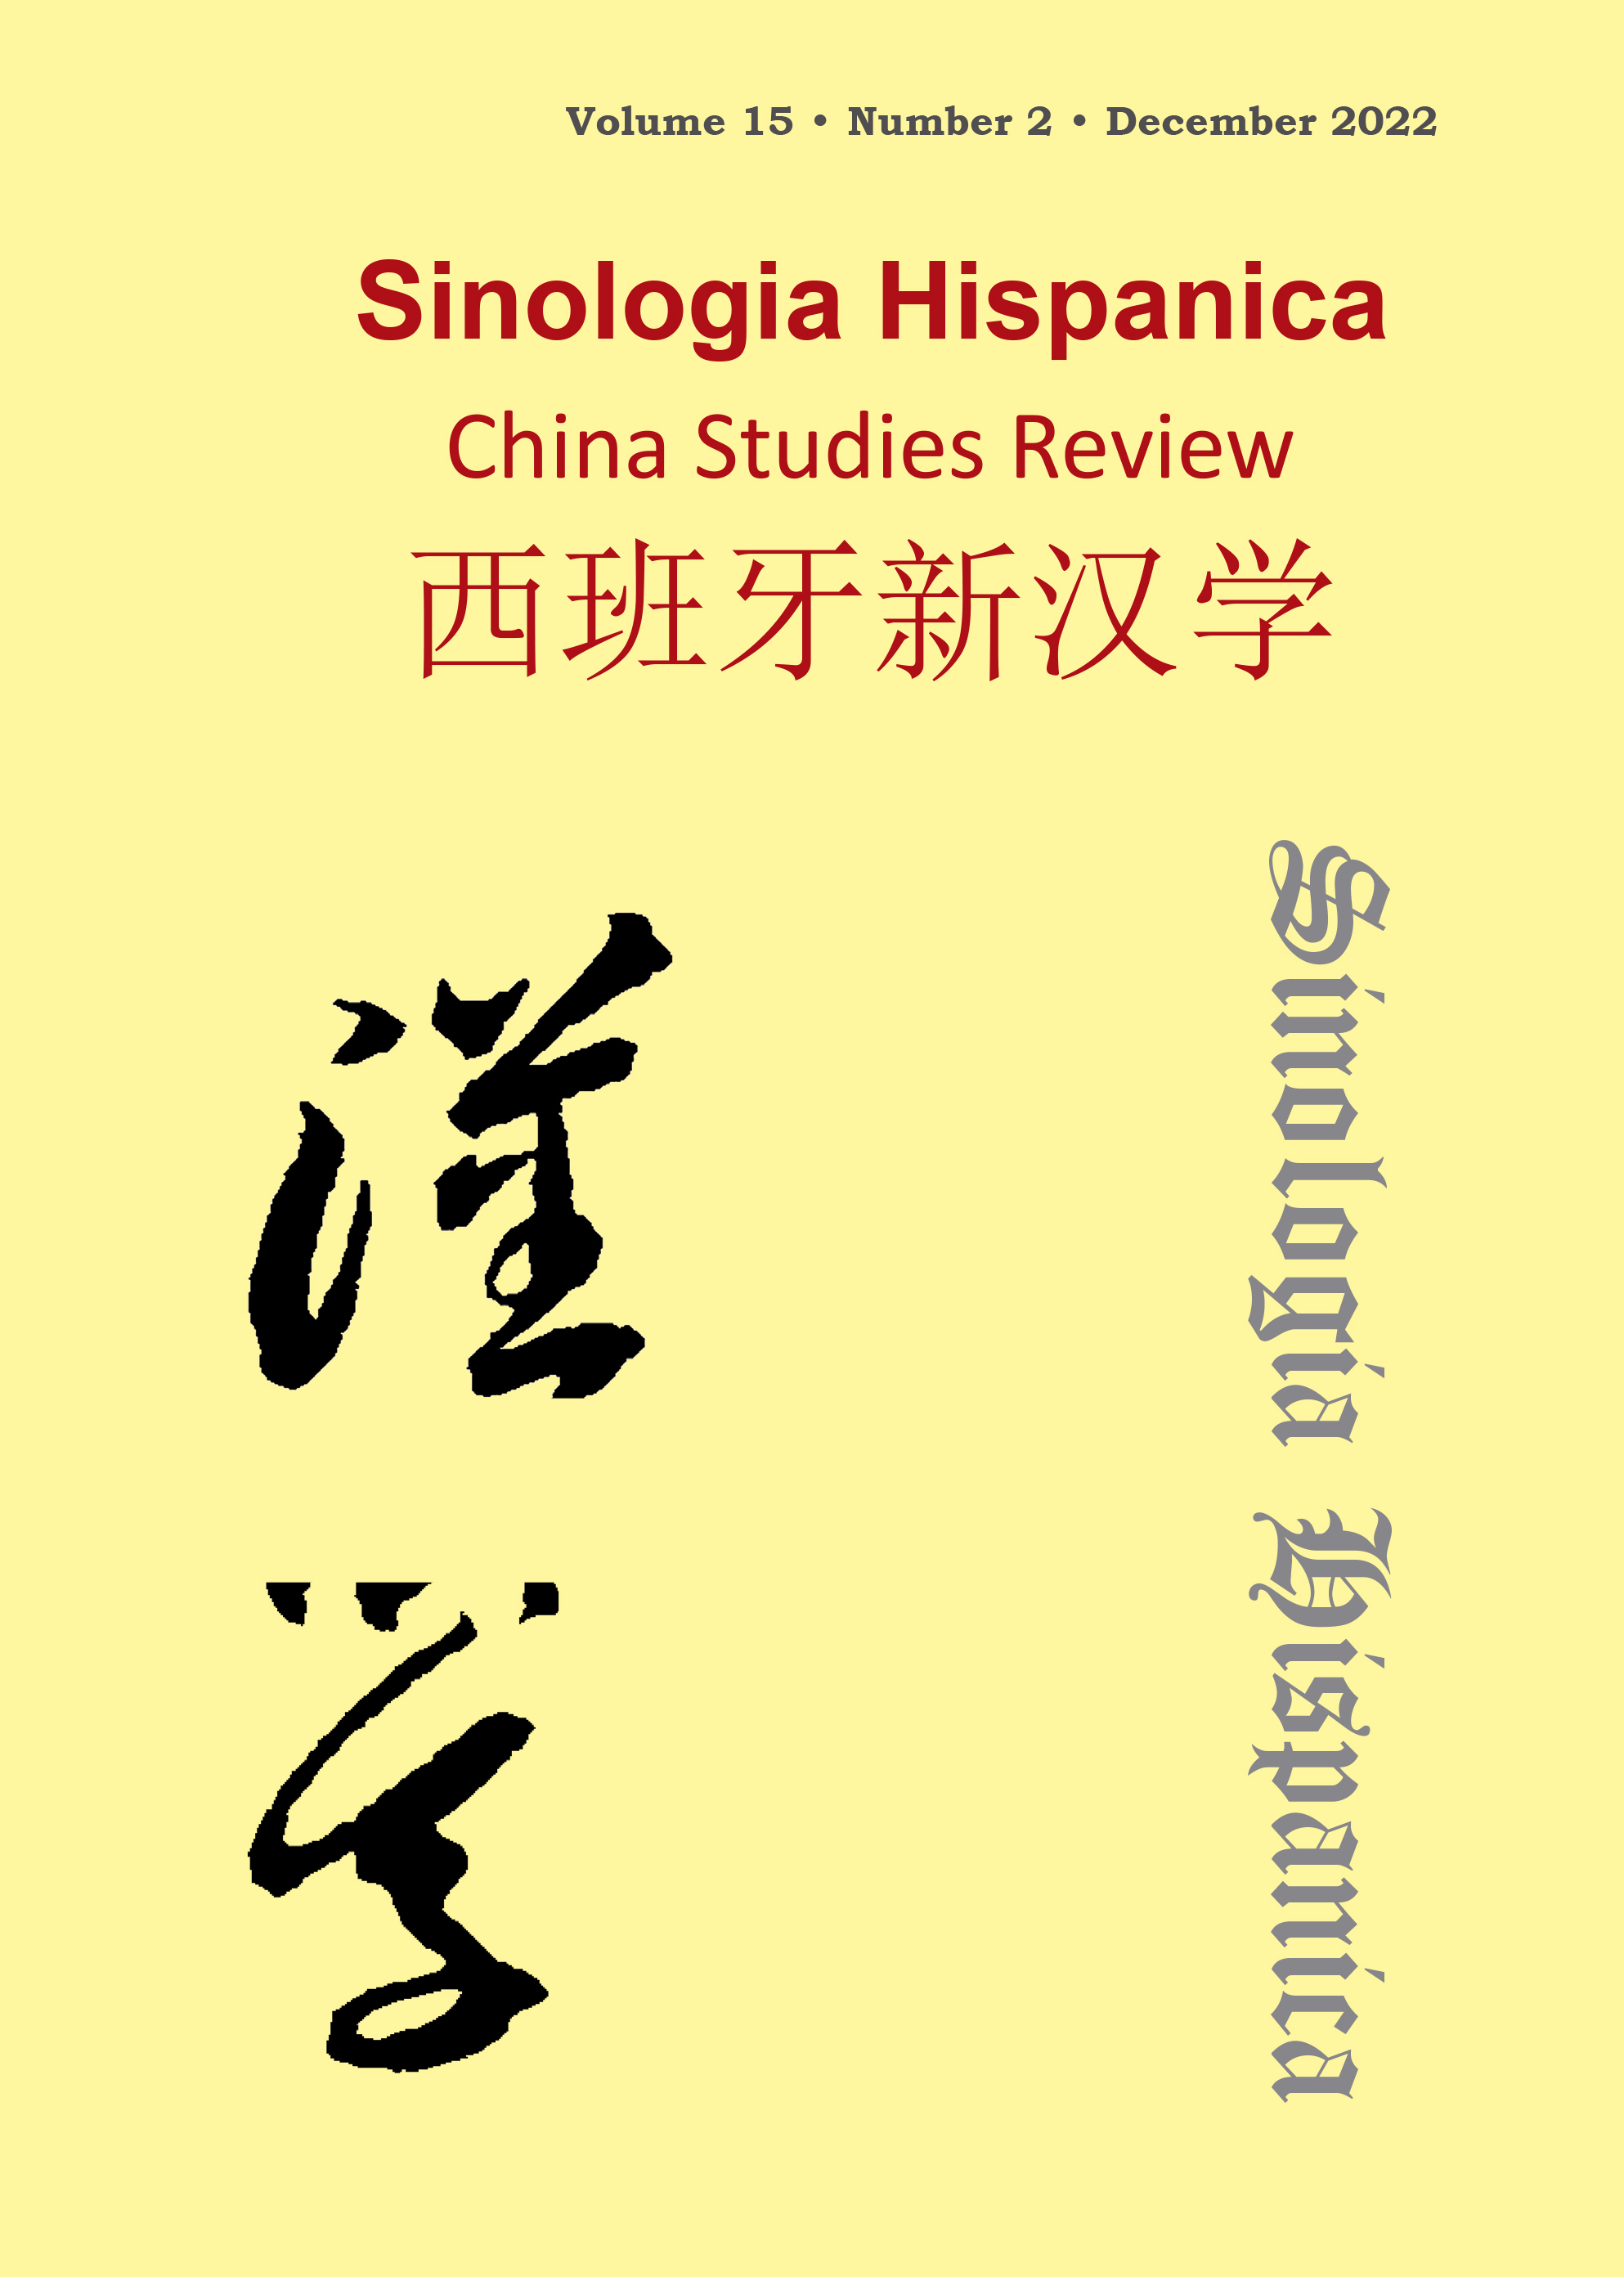 La imagen del arte chino de la dinastía Ming en el contexto español por la exposición “Arte y cultura en torno a 1492”